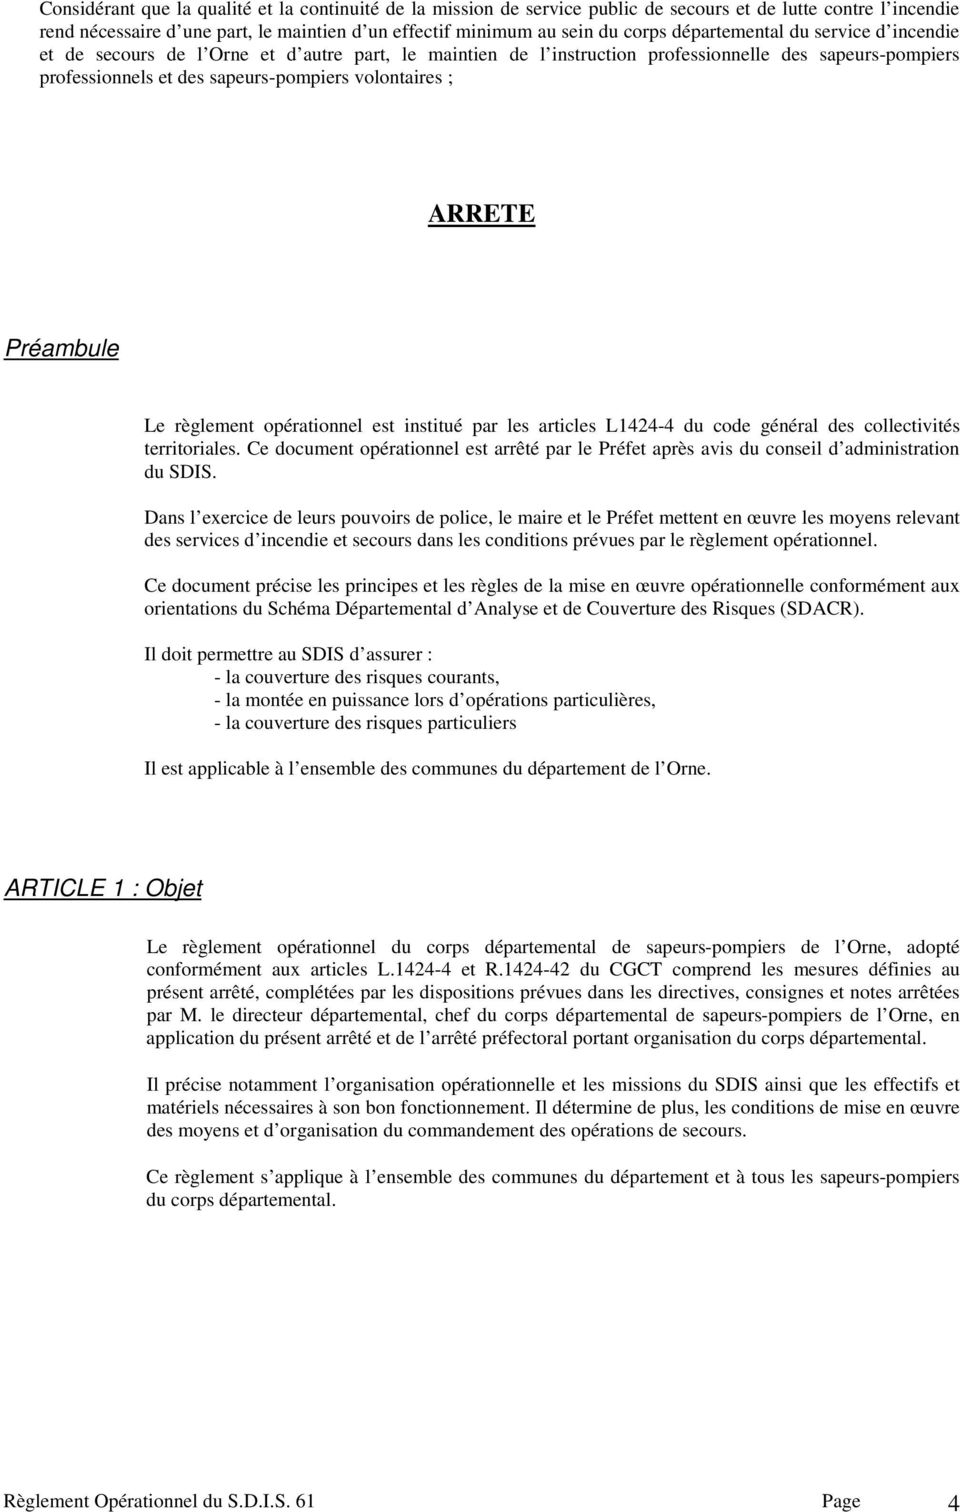 ARRETE Préambule Le règlement opérationnel est institué par les articles L1424-4 du code général des collectivités territoriales.